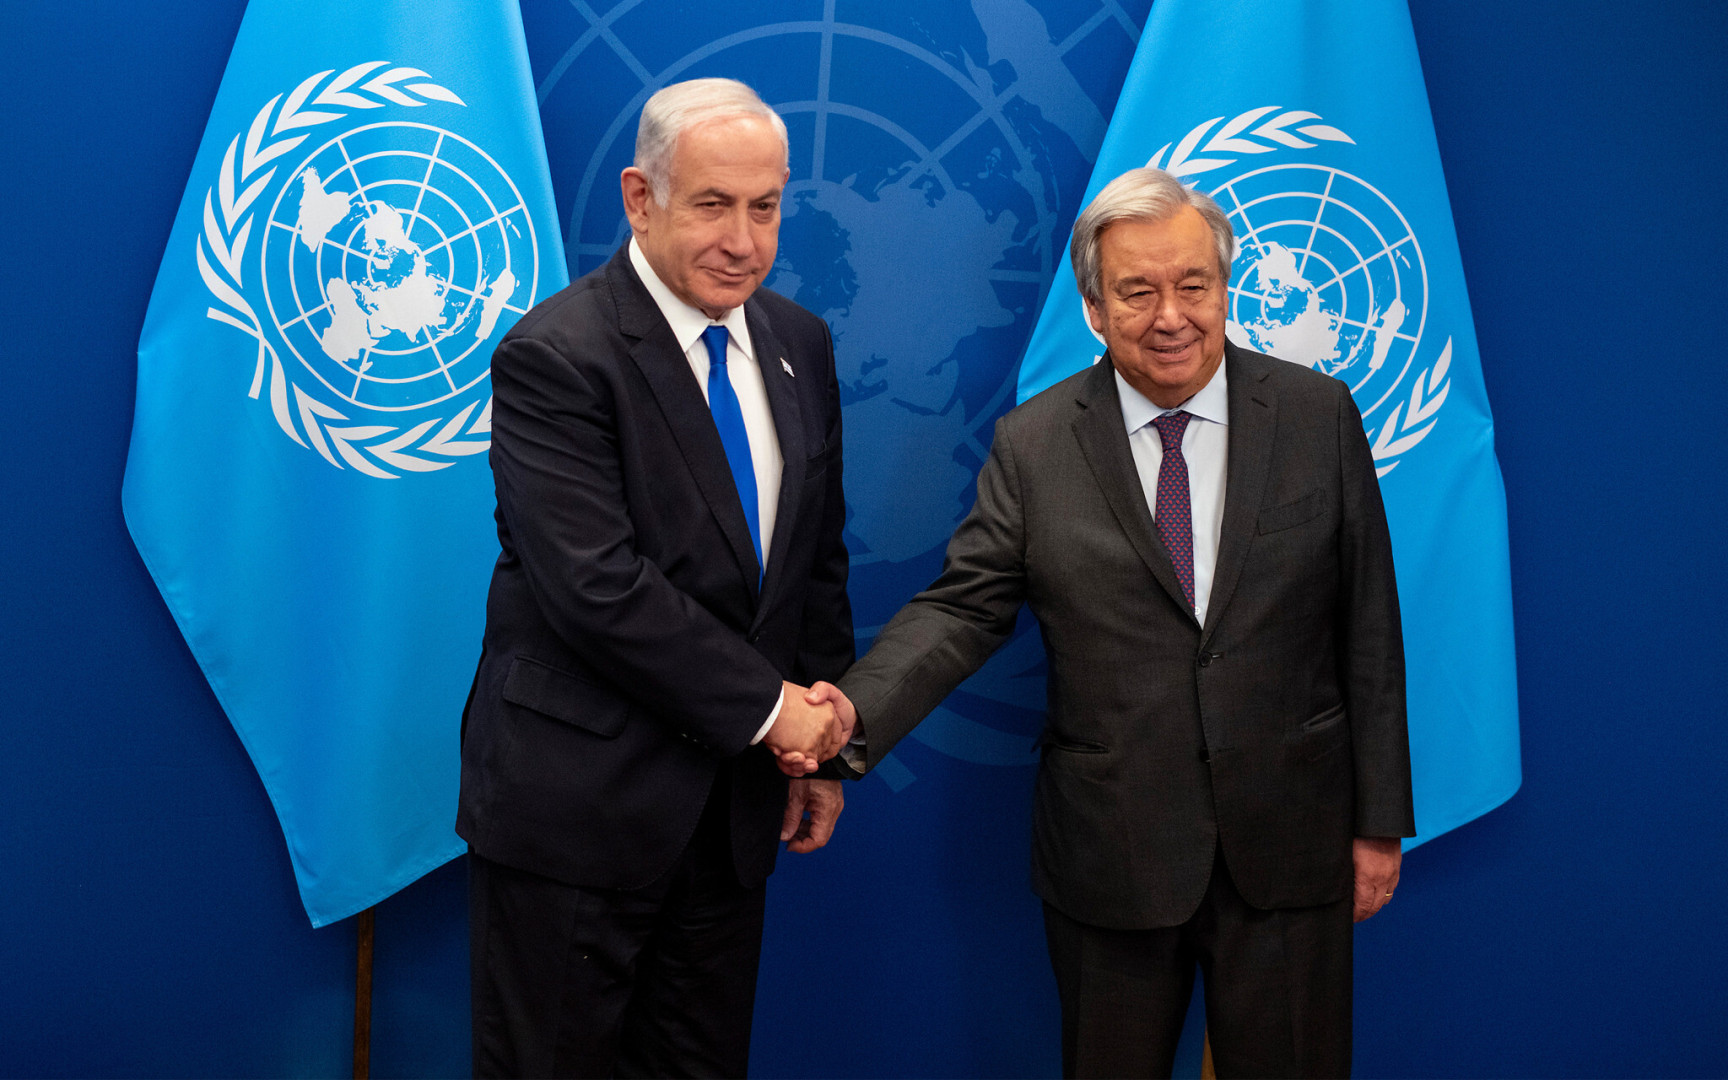 إسرائيل ترفض منح "الفيزا" لمسؤولي الأمم المتحدة: حان الوقت لتلقينهم درساً